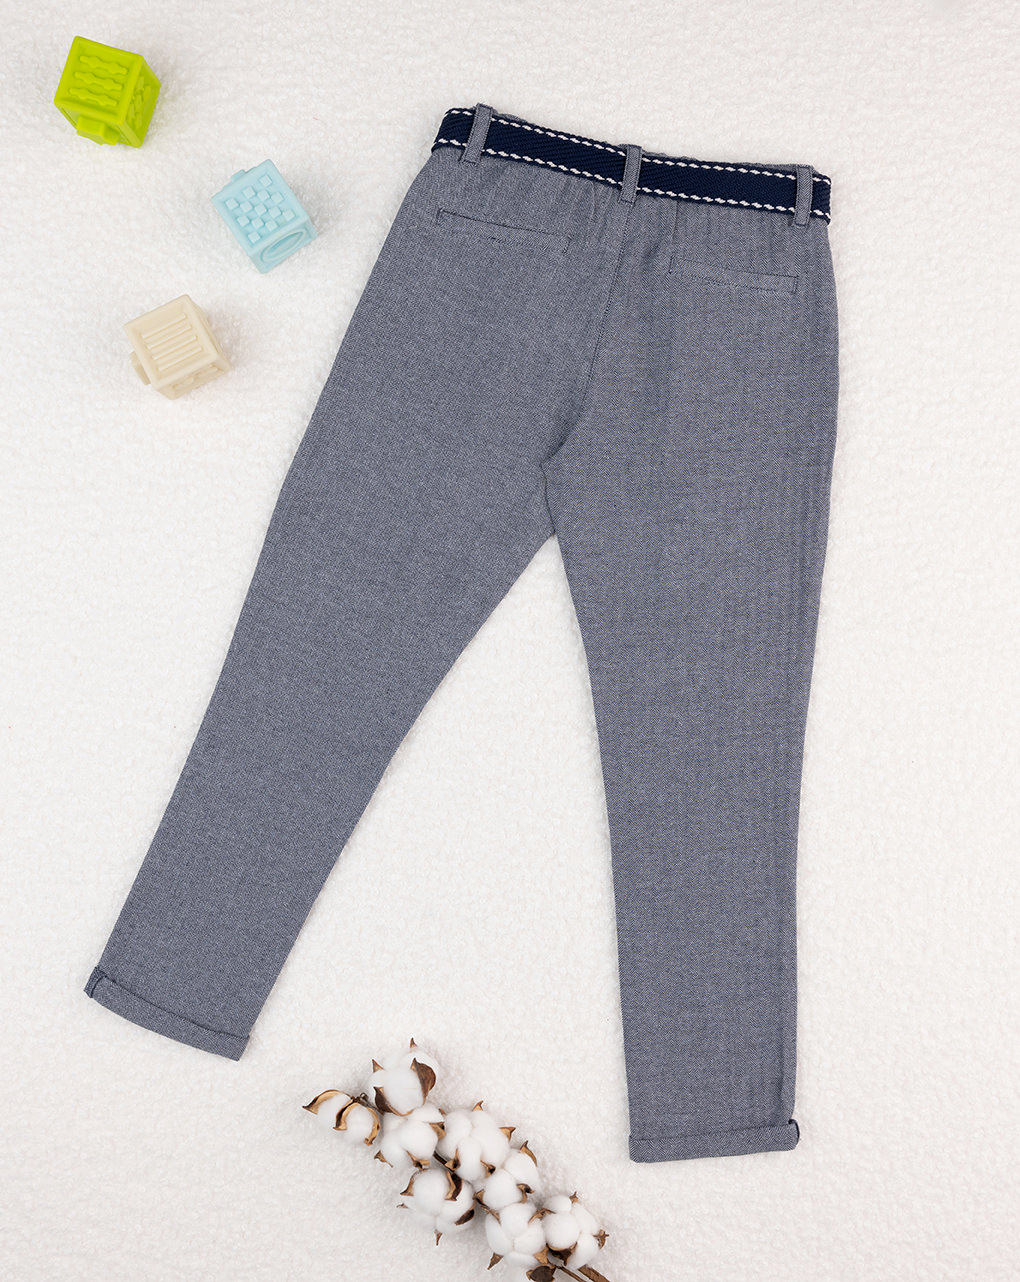 παιδικό παντελόνι ριγέ μπλε/γκρι για αγόρι - Prénatal